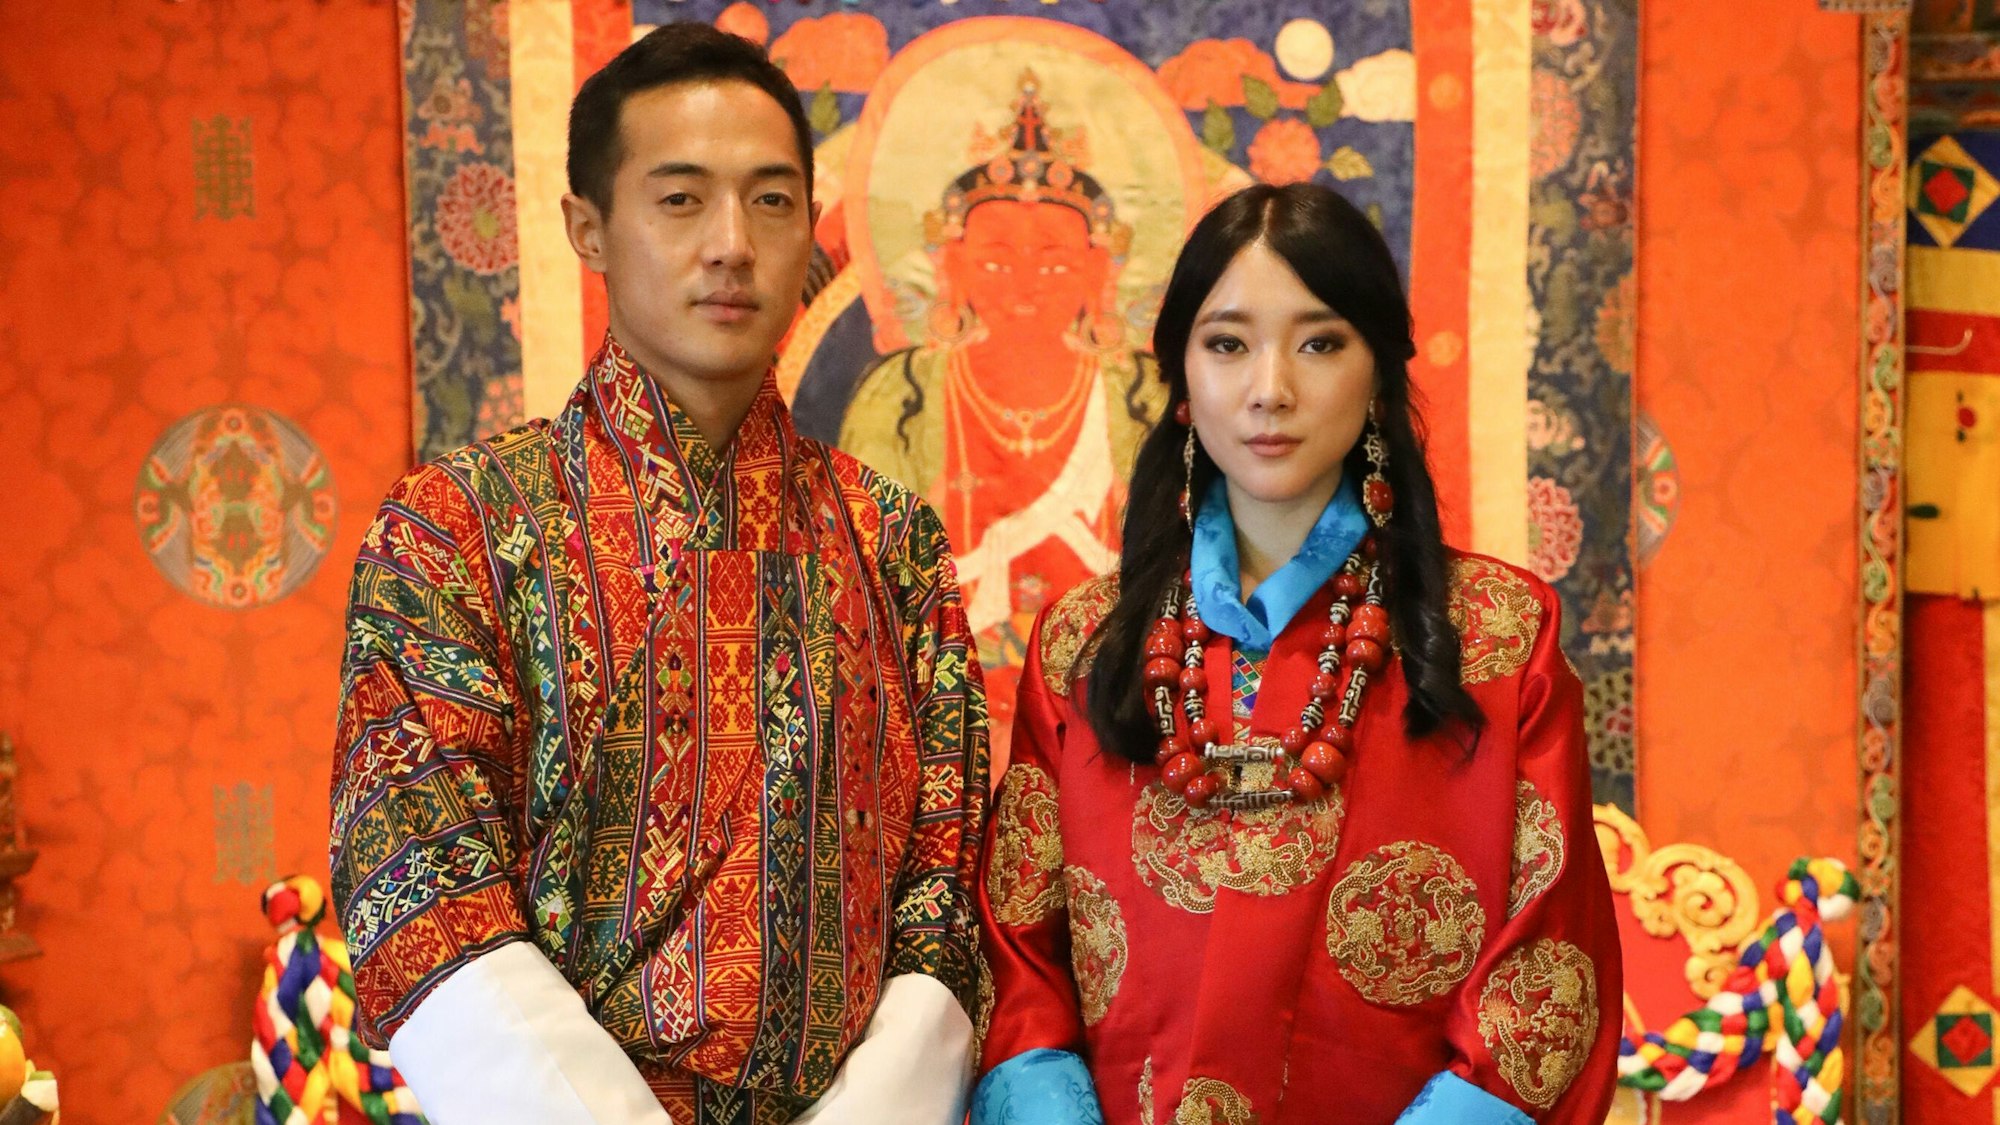 Das Hochzeitsfoto von Prinzessin Eeuphelma Choden Wangchuck und ihr Ehemann Dasho Thinlay Norbu.